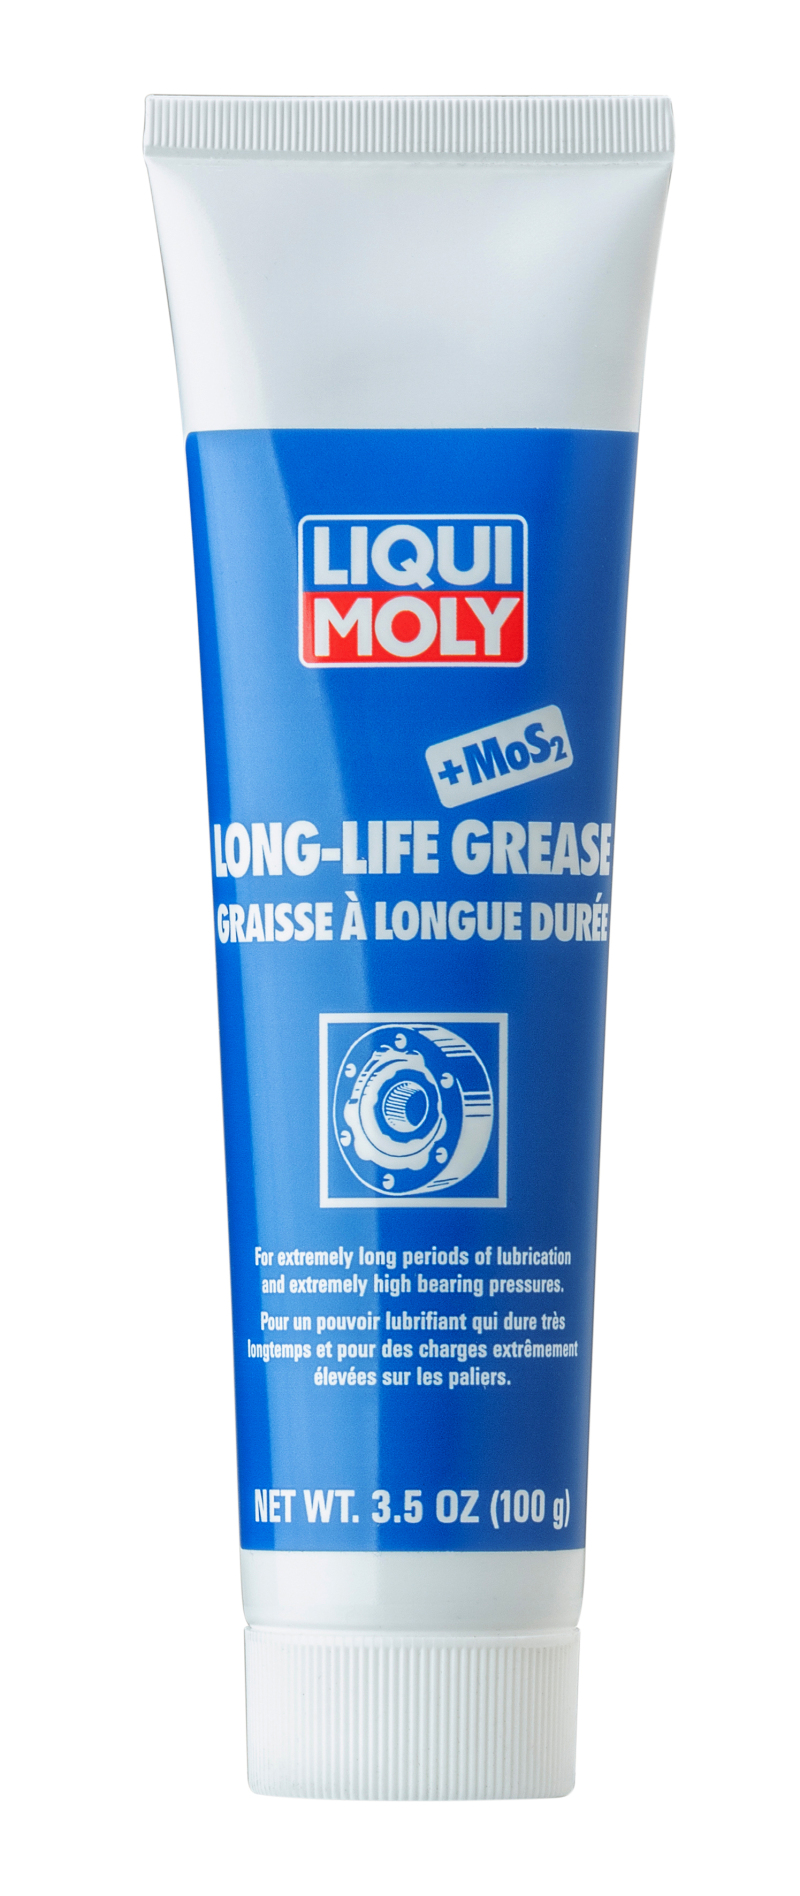 LIQUI MOLY Long-Life Grease + MoS2 - 2003